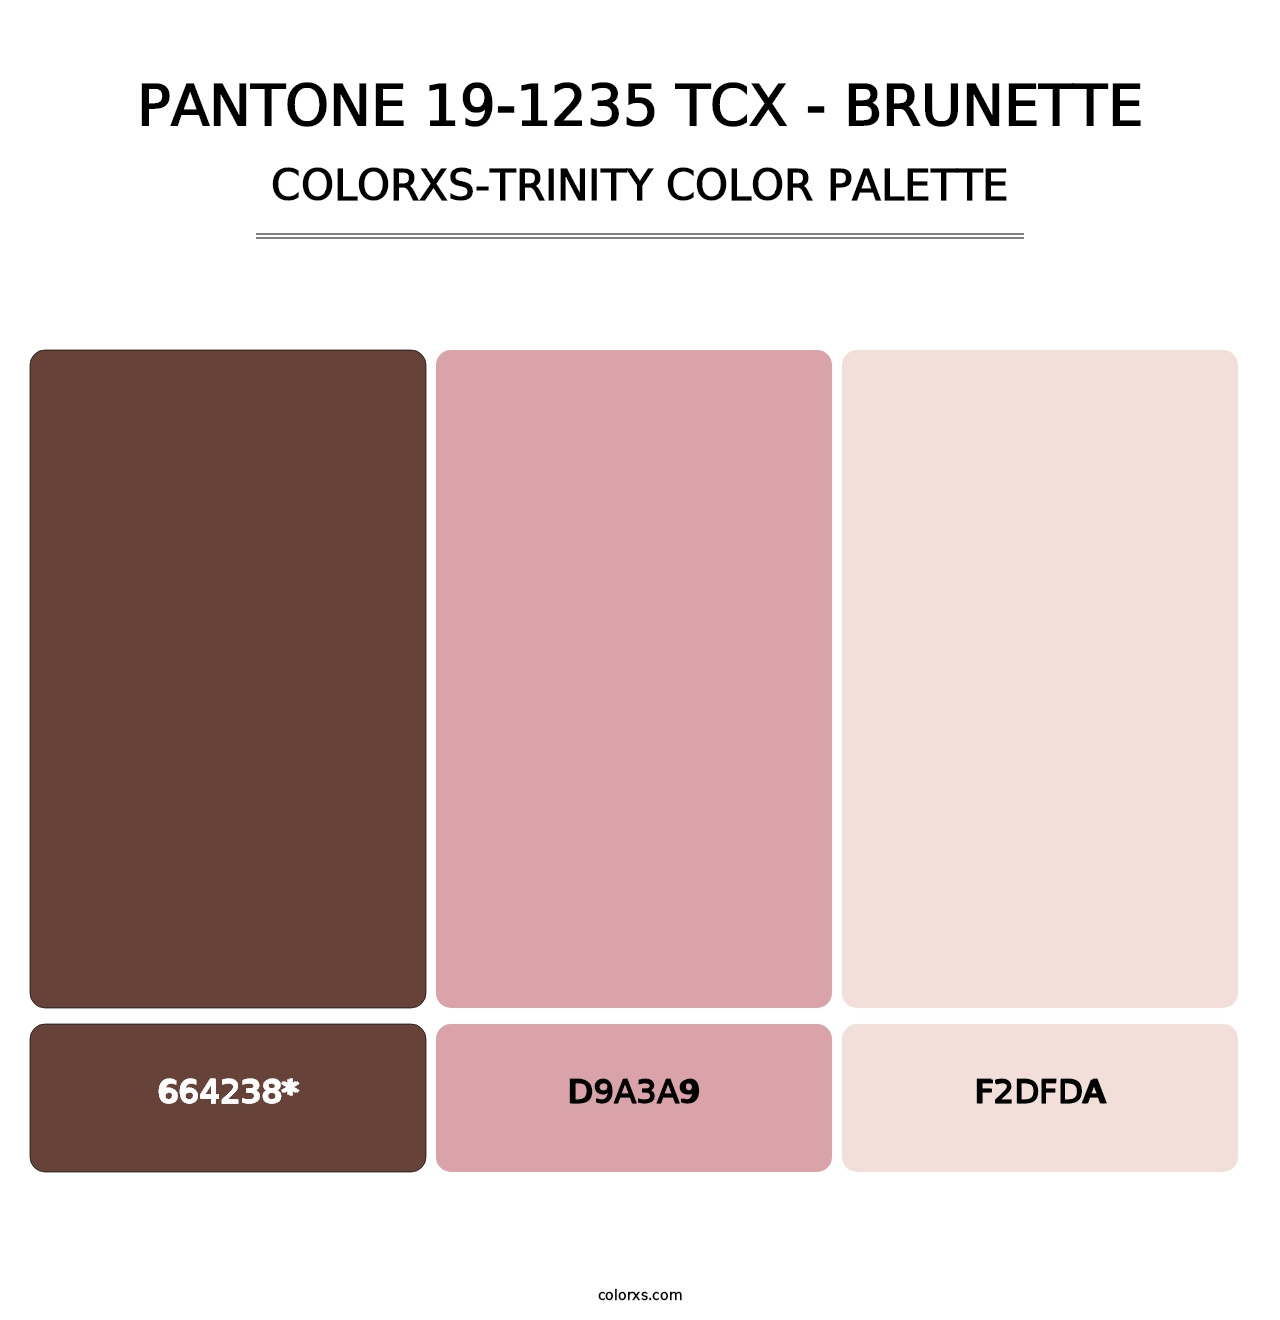 PANTONE 19-1235 TCX - Brunette - Colorxs Trinity Palette